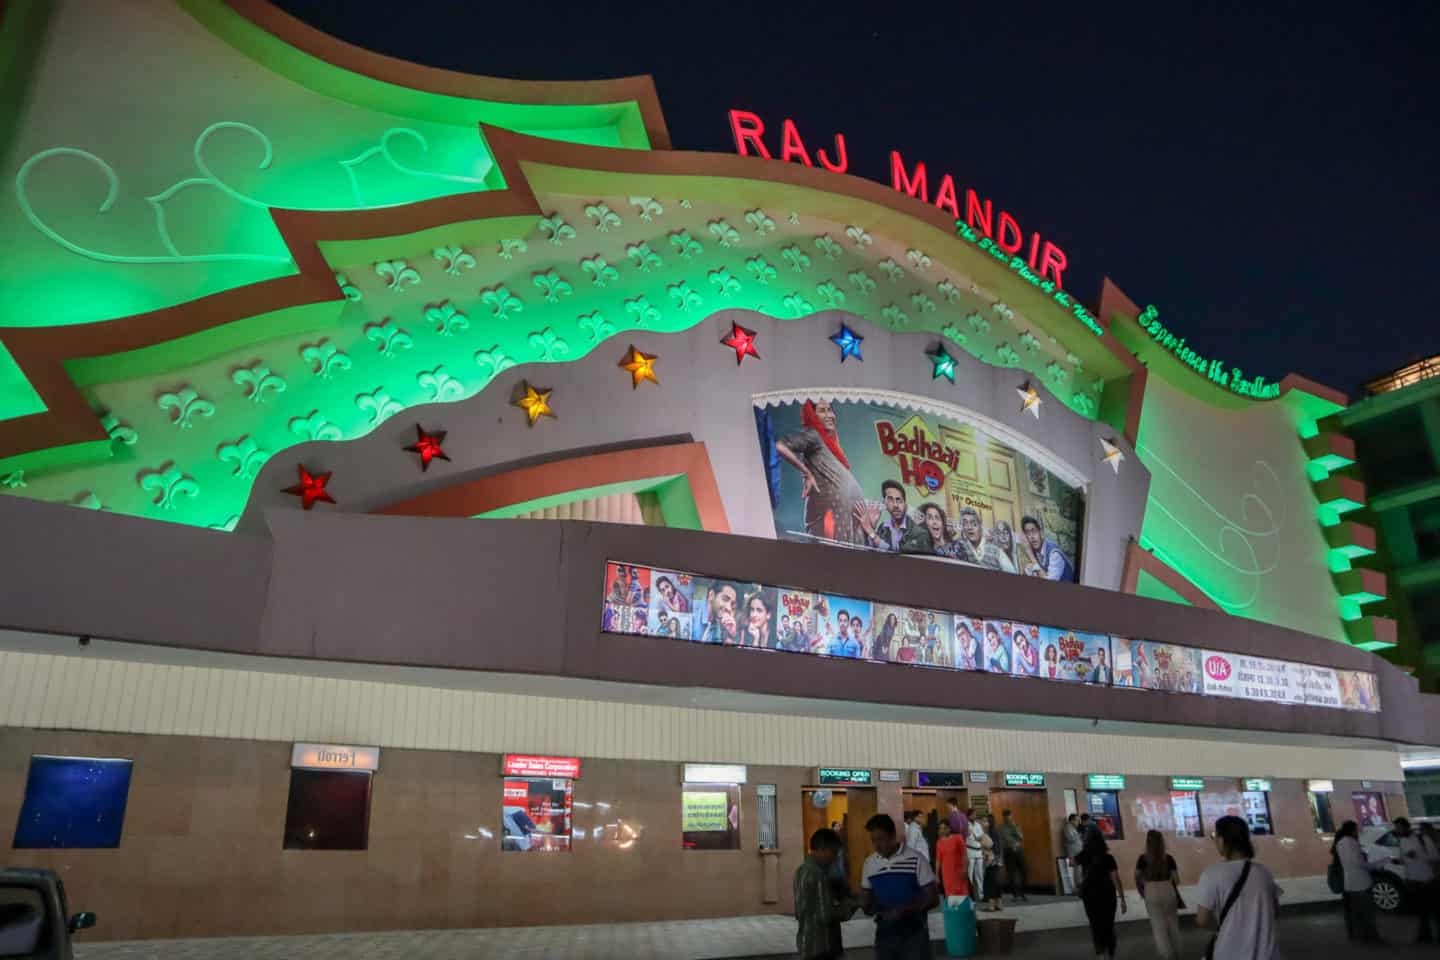 Rajmandir Cinema Jaipur